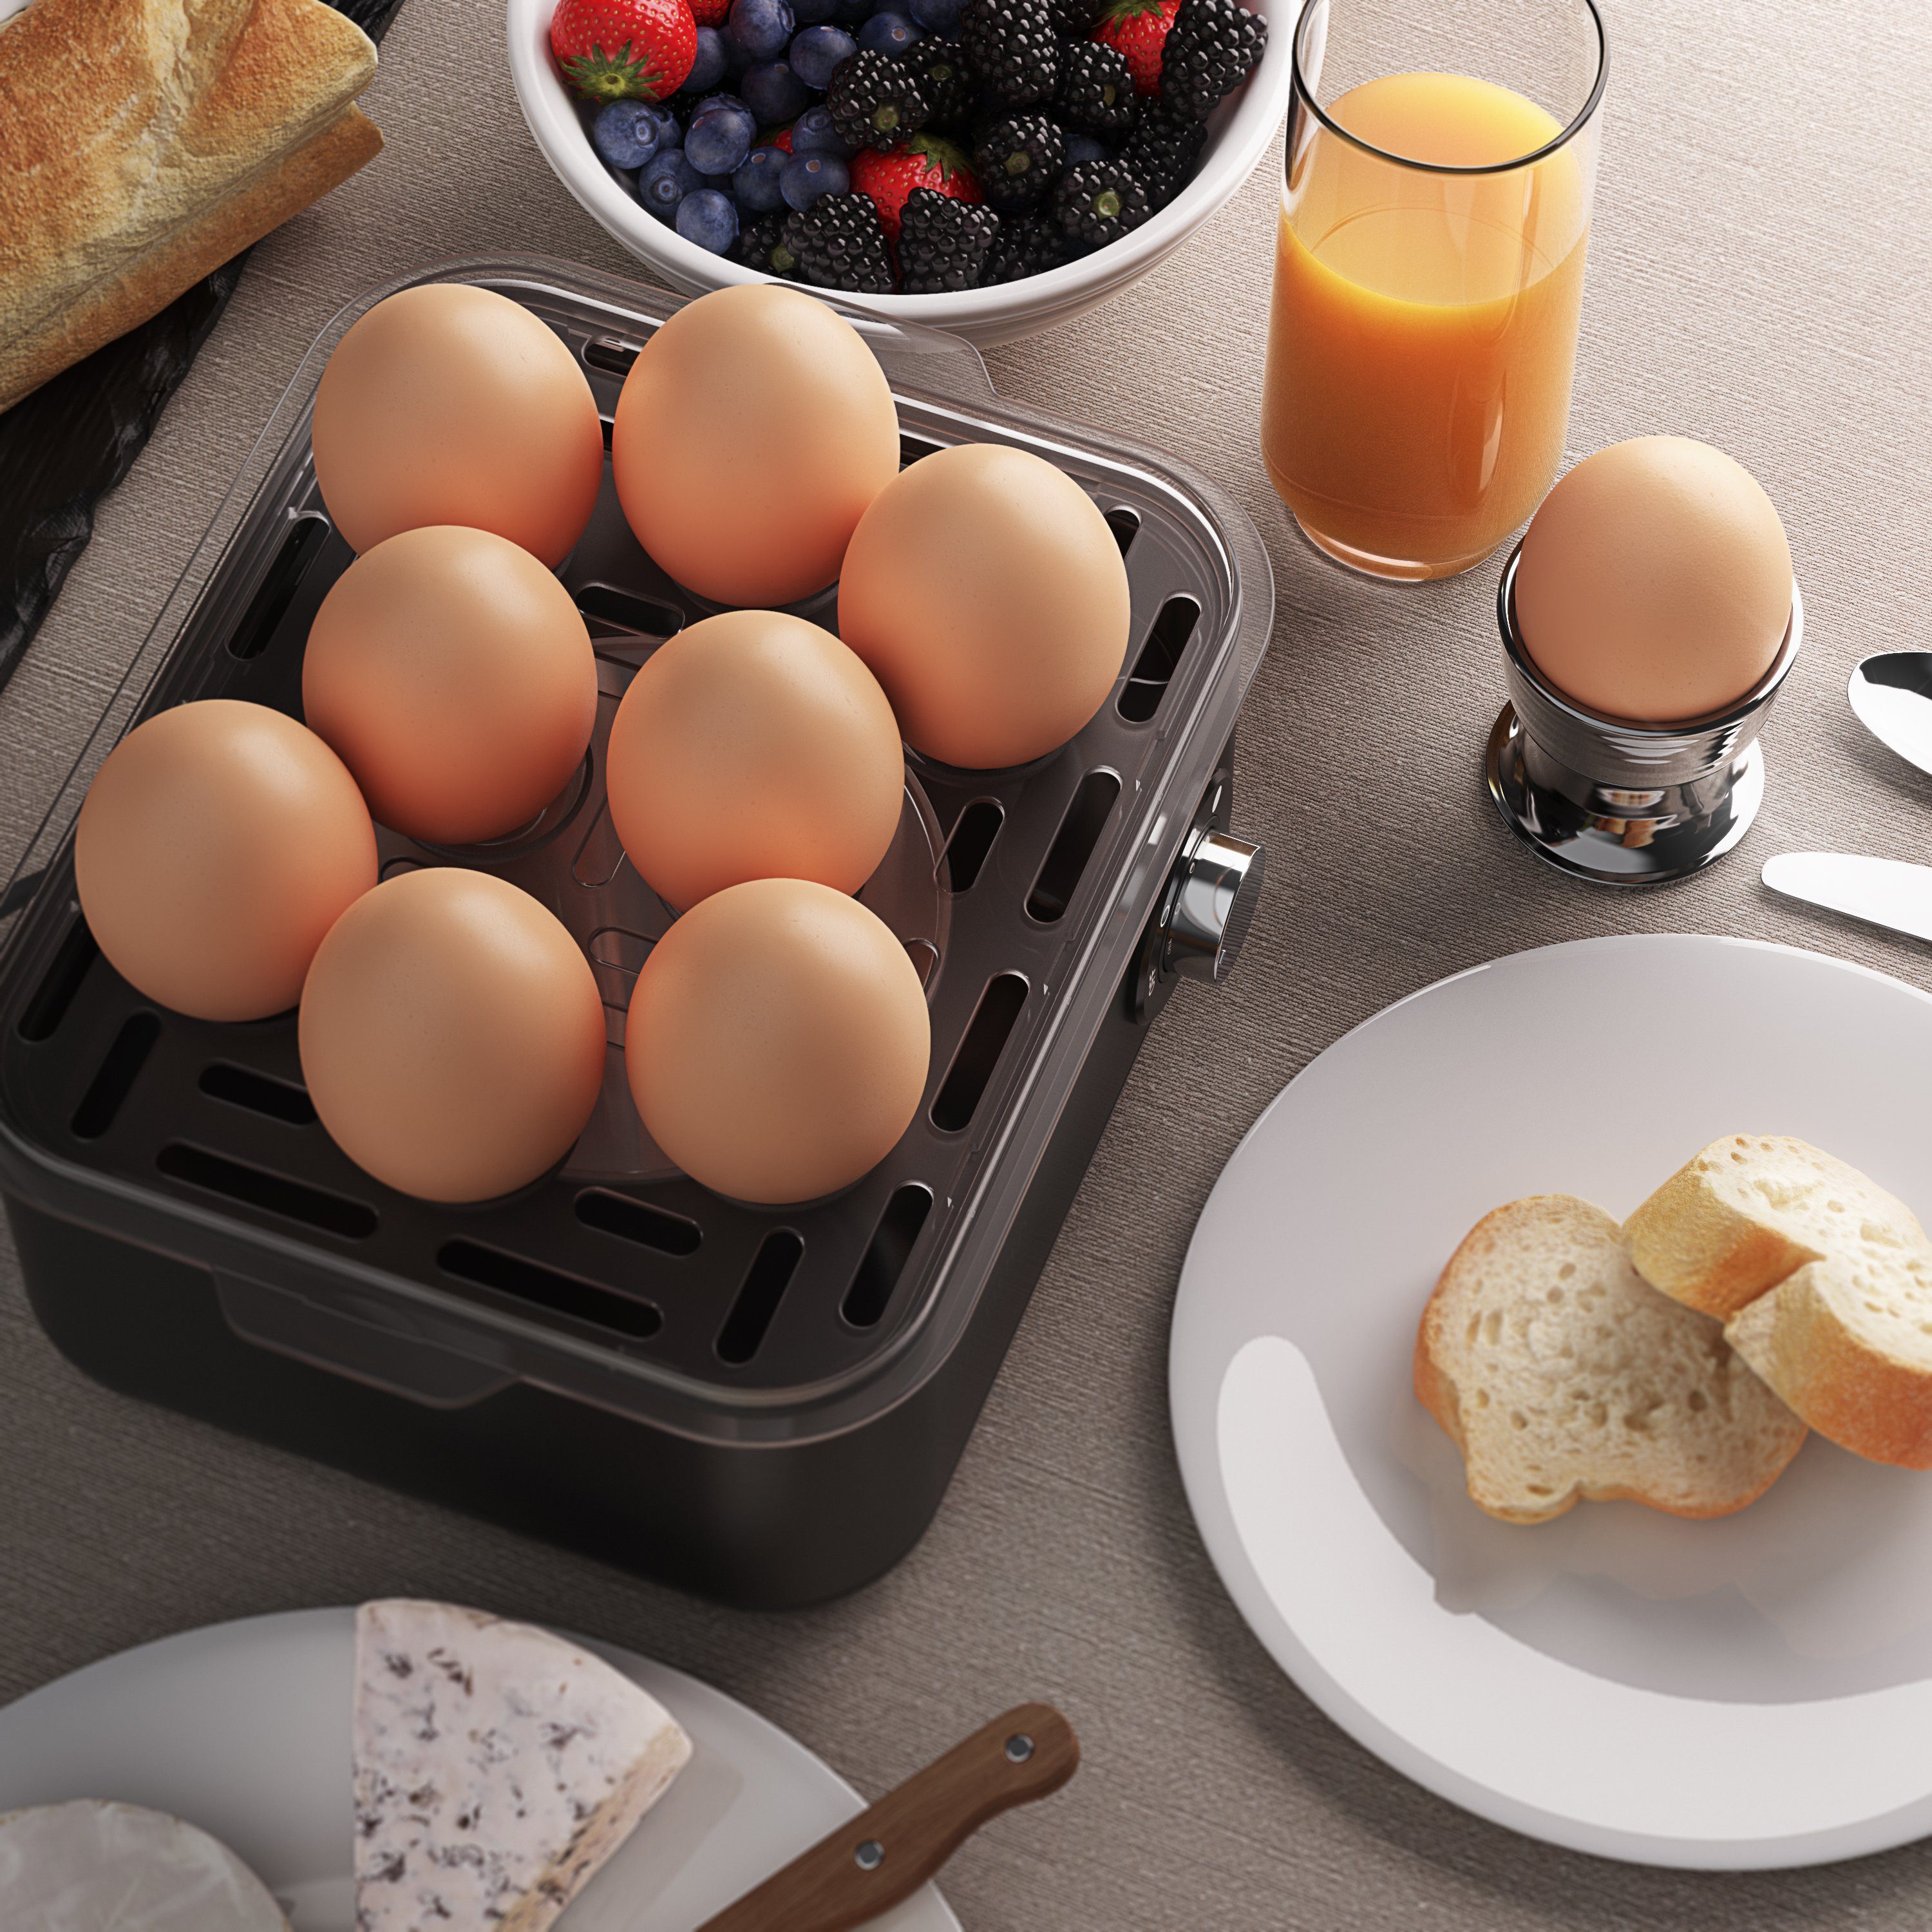 Arendo Frühstücks-Set (2-tlg), 1,5l Eierkocher, mit Wasserkocher & Temperaturwahl Edelstahl, Grau